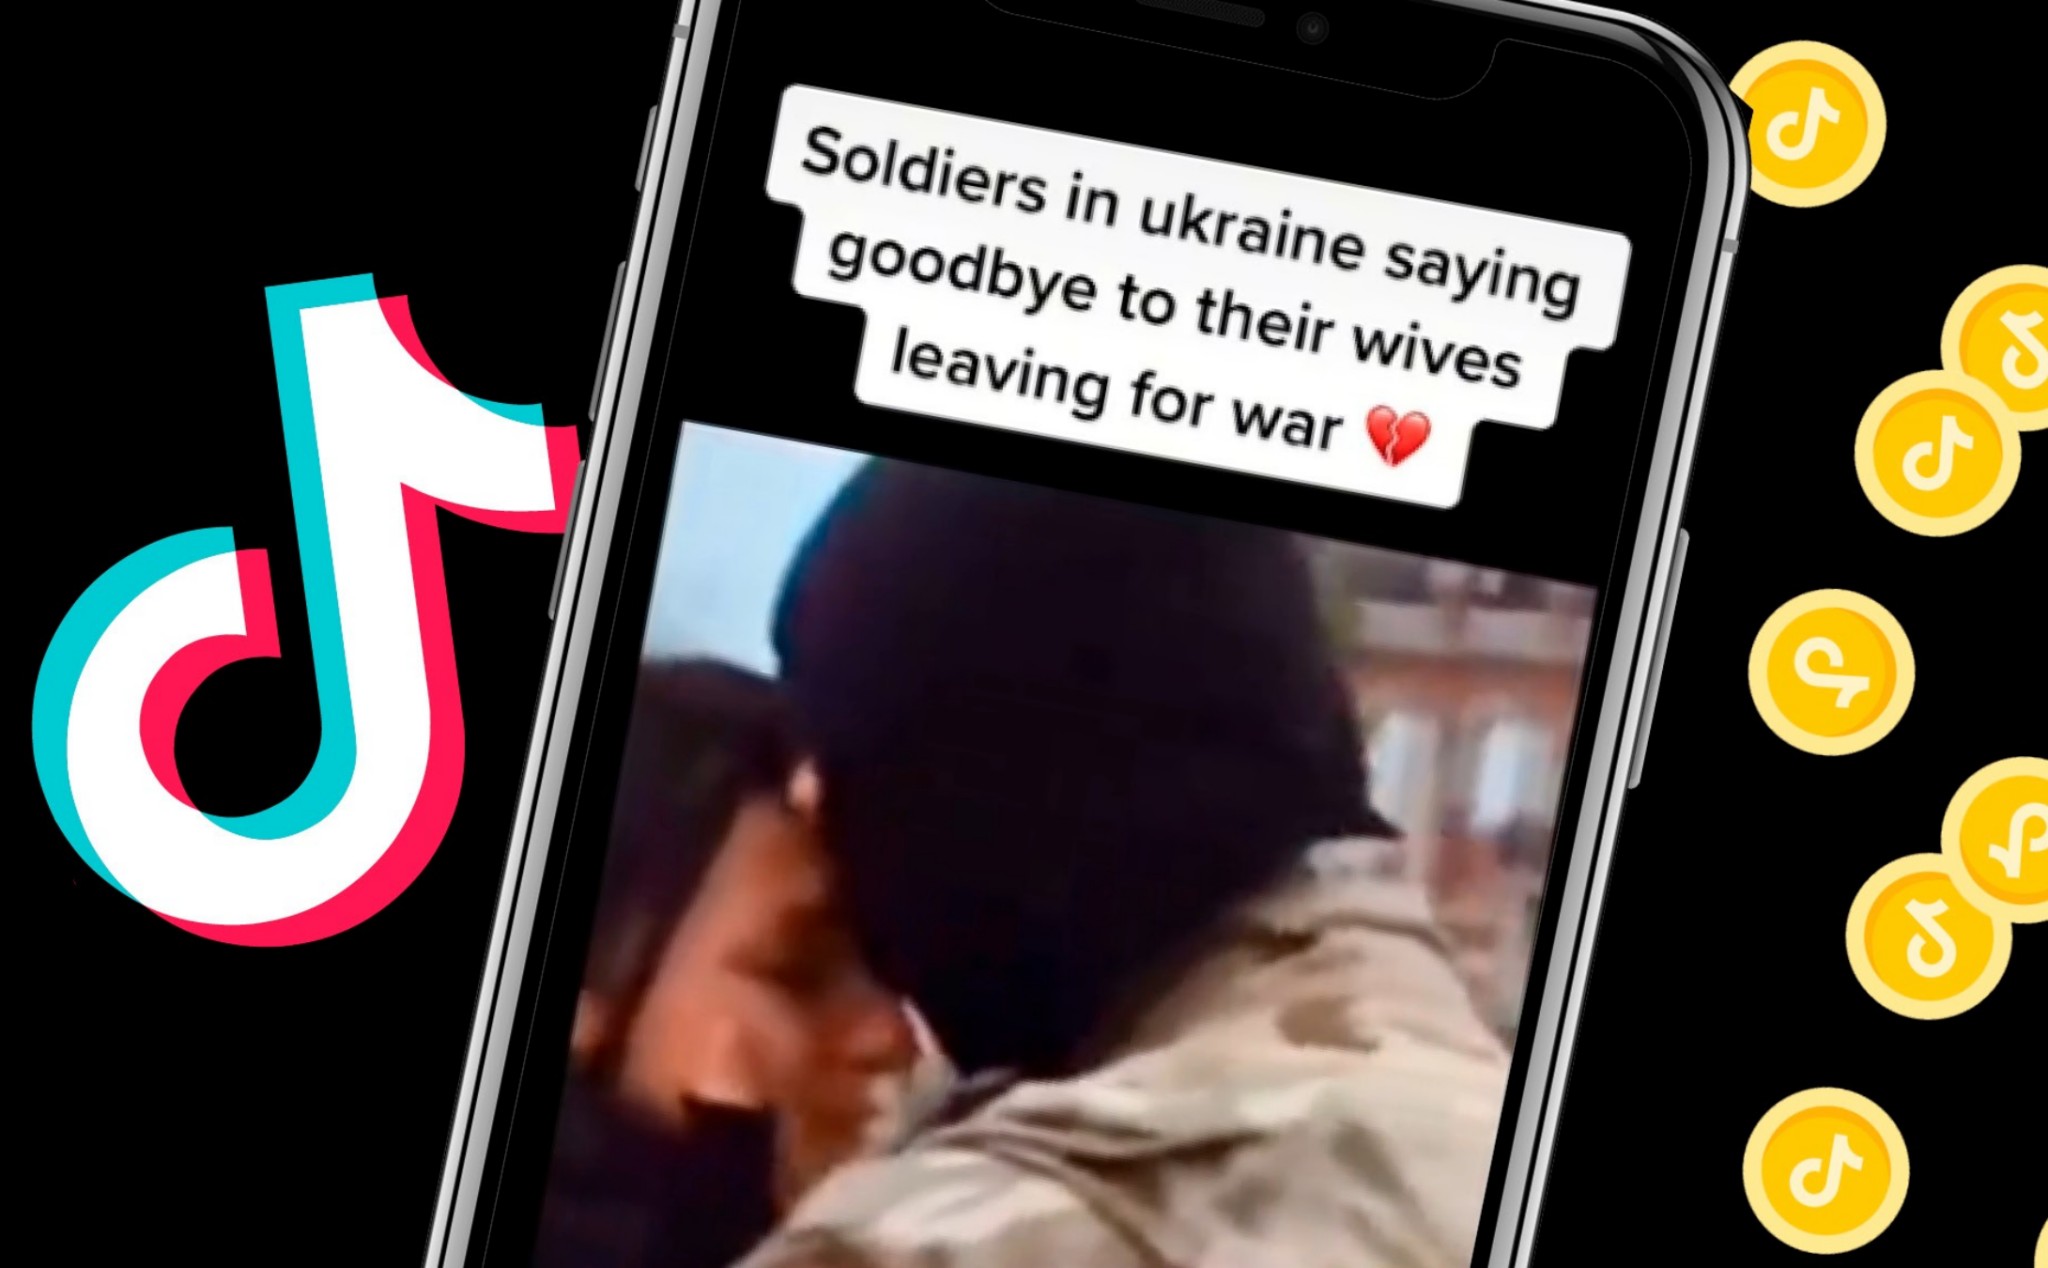 Thuật toán TikTok gợi ý người dùng xem video giả về cuộc chiến ở Ukraine